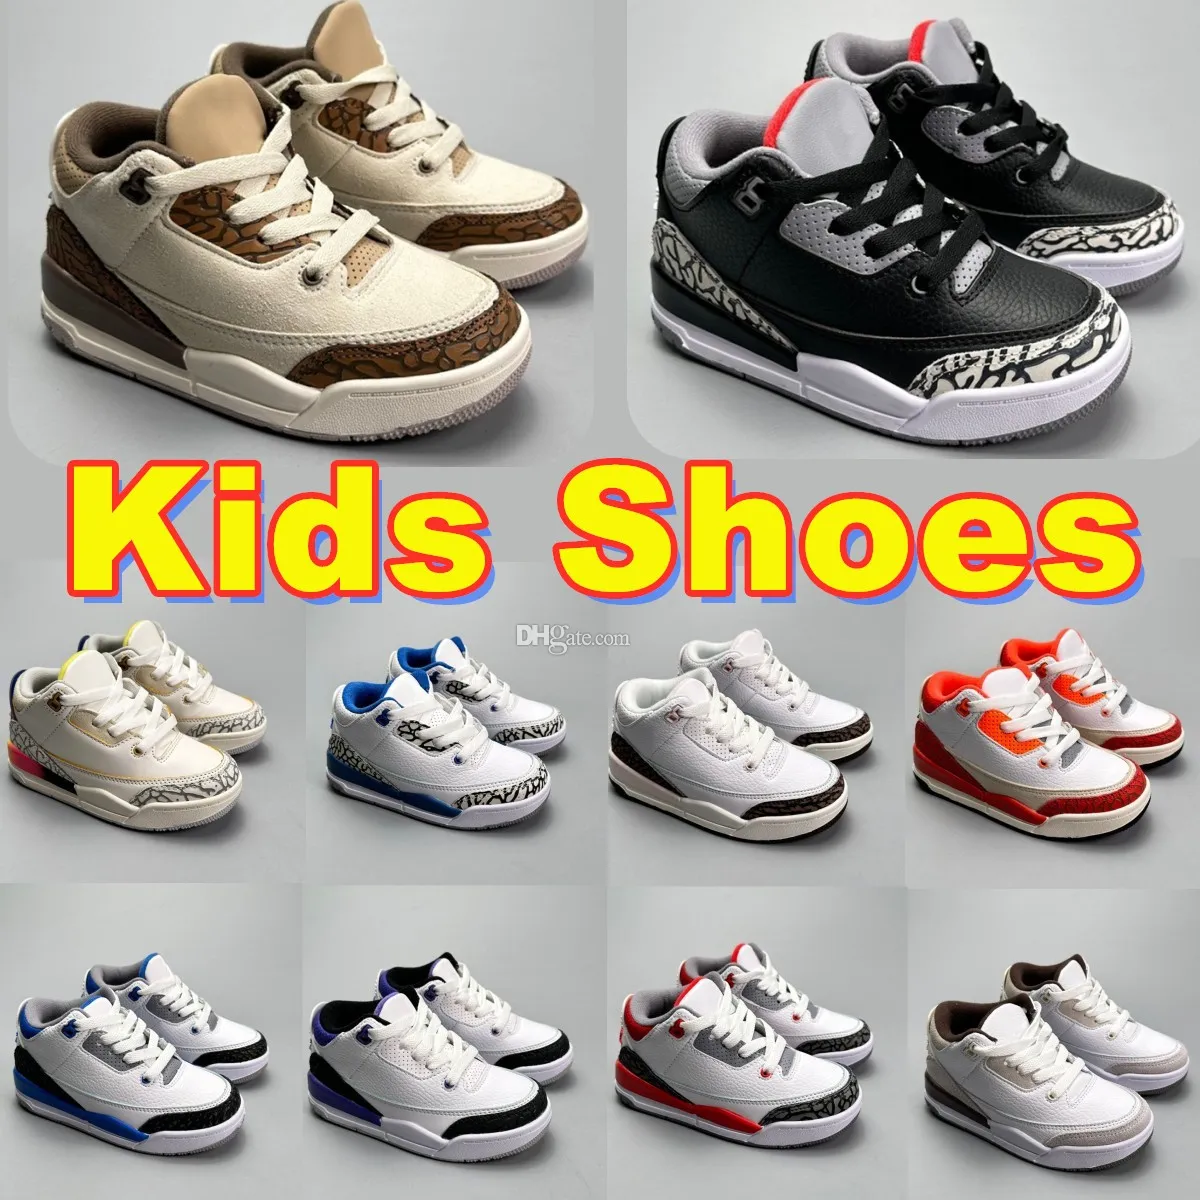 Scarpe da ginnastica per bambini Bambini Jumpman 3s 3 Scarpe Ragazze Ragazzi Scarpe da pallacanestro Designer scarpe da bambino sneaker da bambino Athletic Infants scarpe da ginnastica sportive